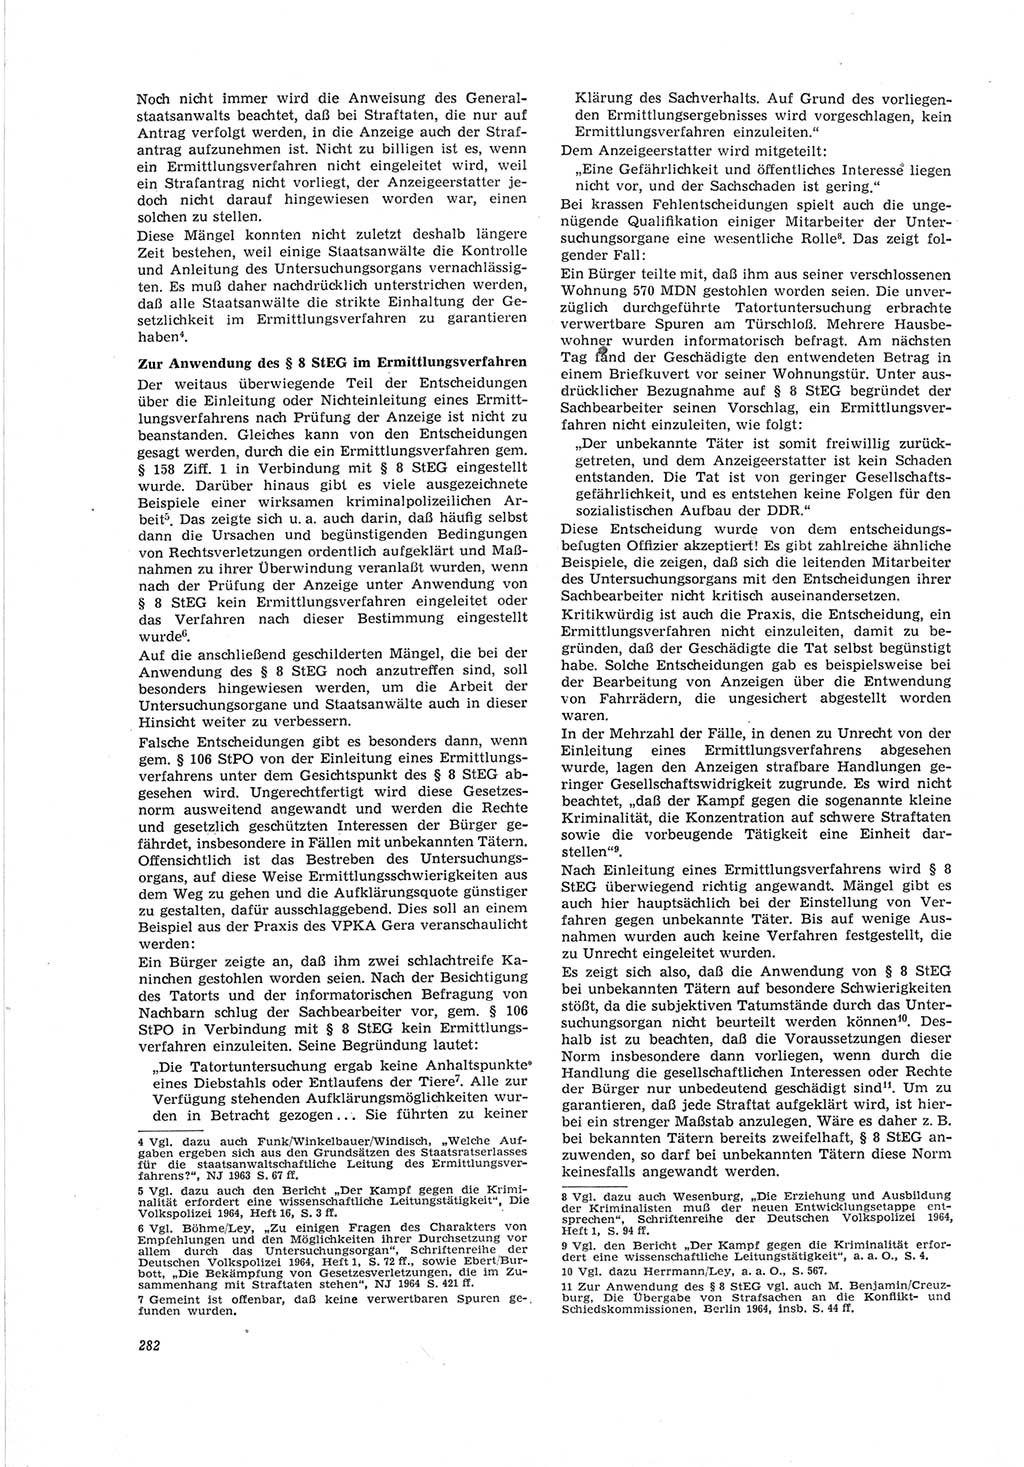 Neue Justiz (NJ), Zeitschrift für Recht und Rechtswissenschaft [Deutsche Demokratische Republik (DDR)], 19. Jahrgang 1965, Seite 282 (NJ DDR 1965, S. 282)